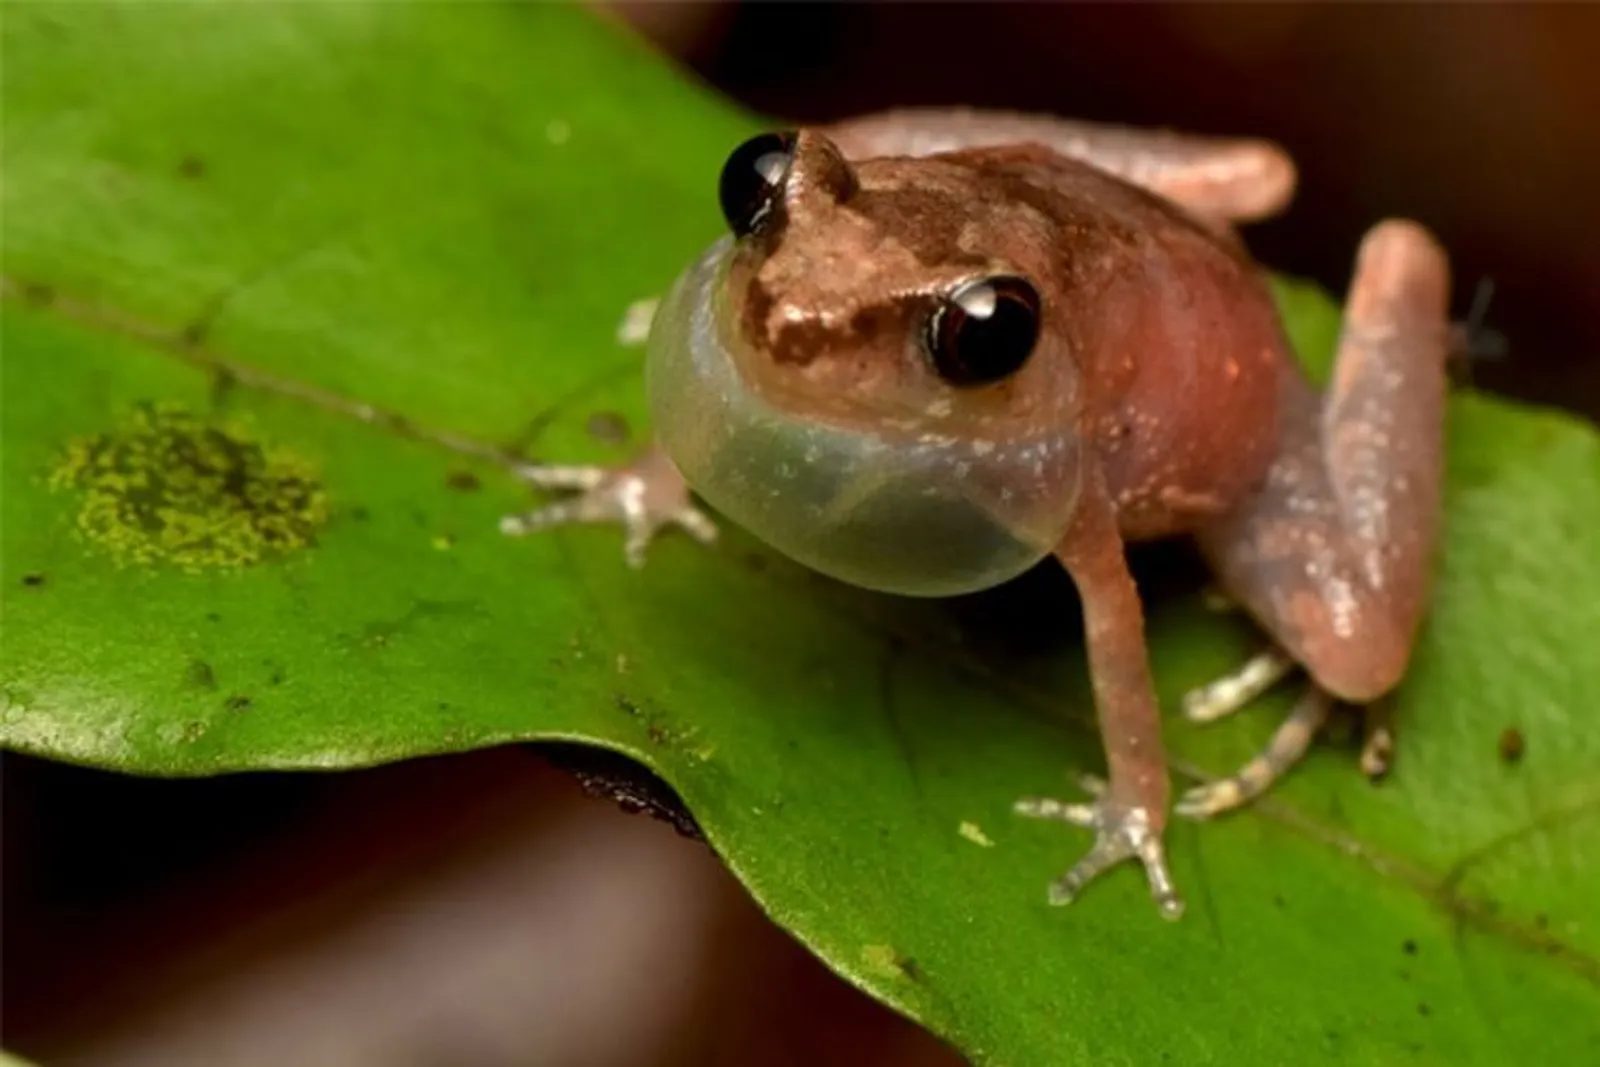 Bornean Frog Race, Belajar Mengetahui Jenis Amfibi dan Konservasinya